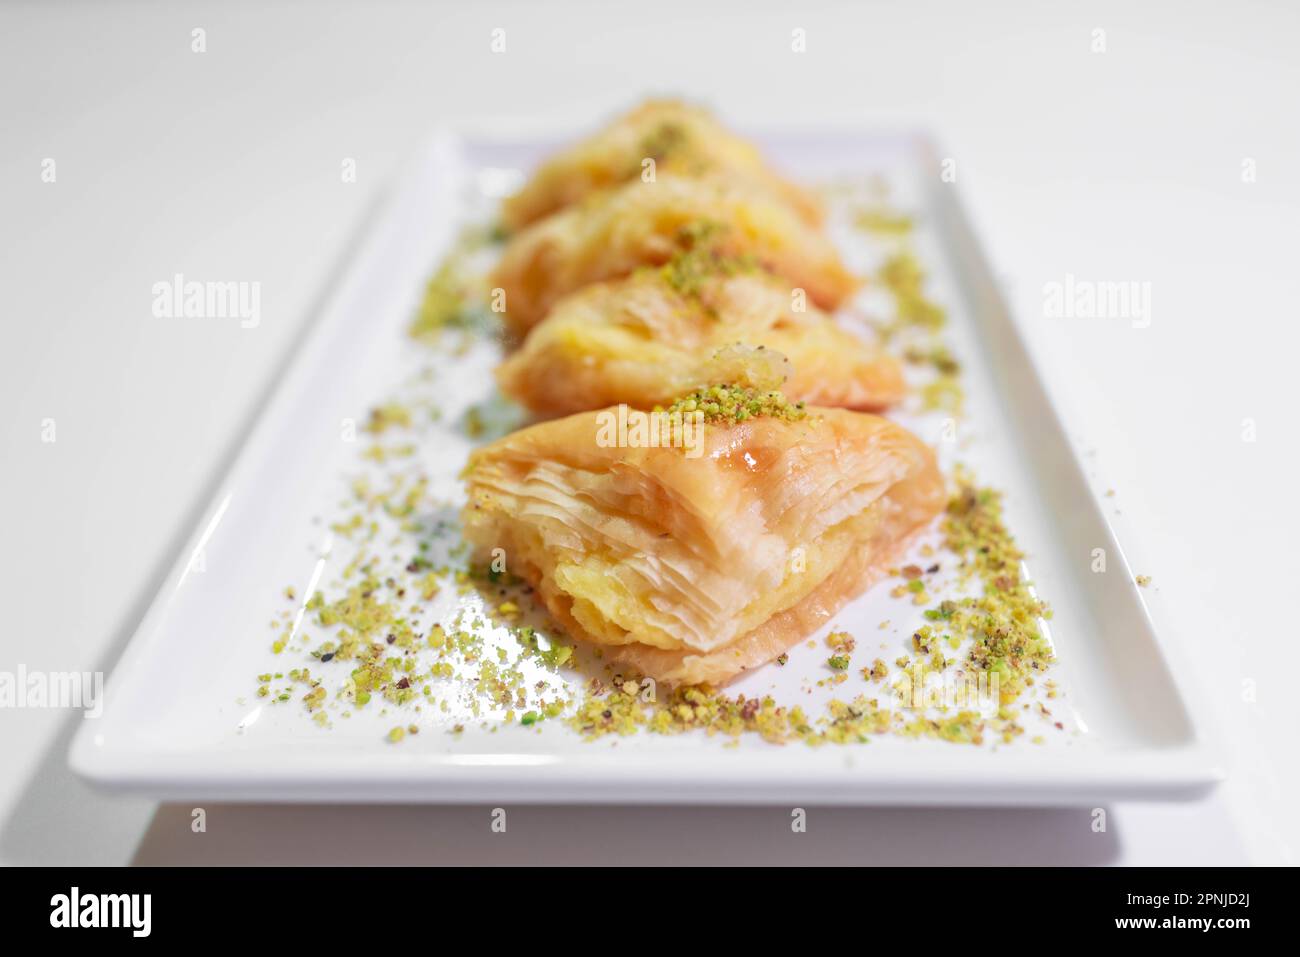 Traditionelles arabisches Dessert - ein Tablett mit einer Vielzahl von  Süßigkeiten - kreative, leckere Kuchen aus dem Nahen Osten - arabische  Küche Stockfotografie - Alamy